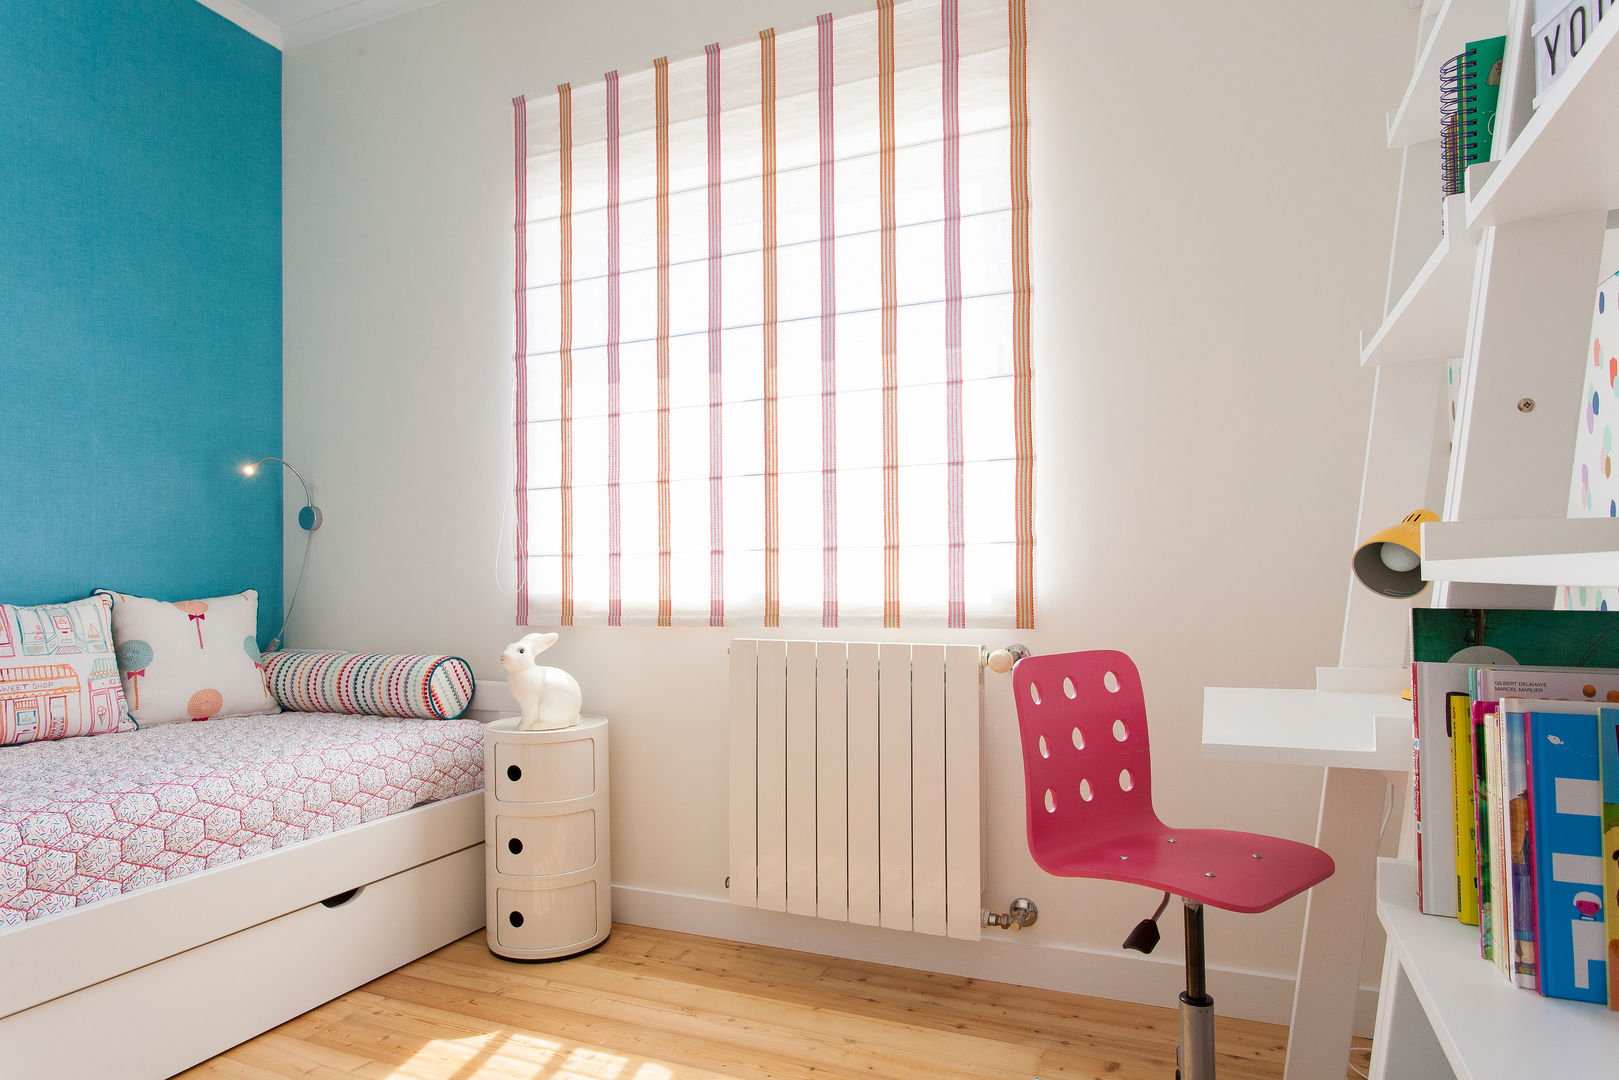 Moradia c/ 2 quartos - Cascais, Traço Magenta - Design de Interiores Traço Magenta - Design de Interiores Dormitorios infantiles modernos: